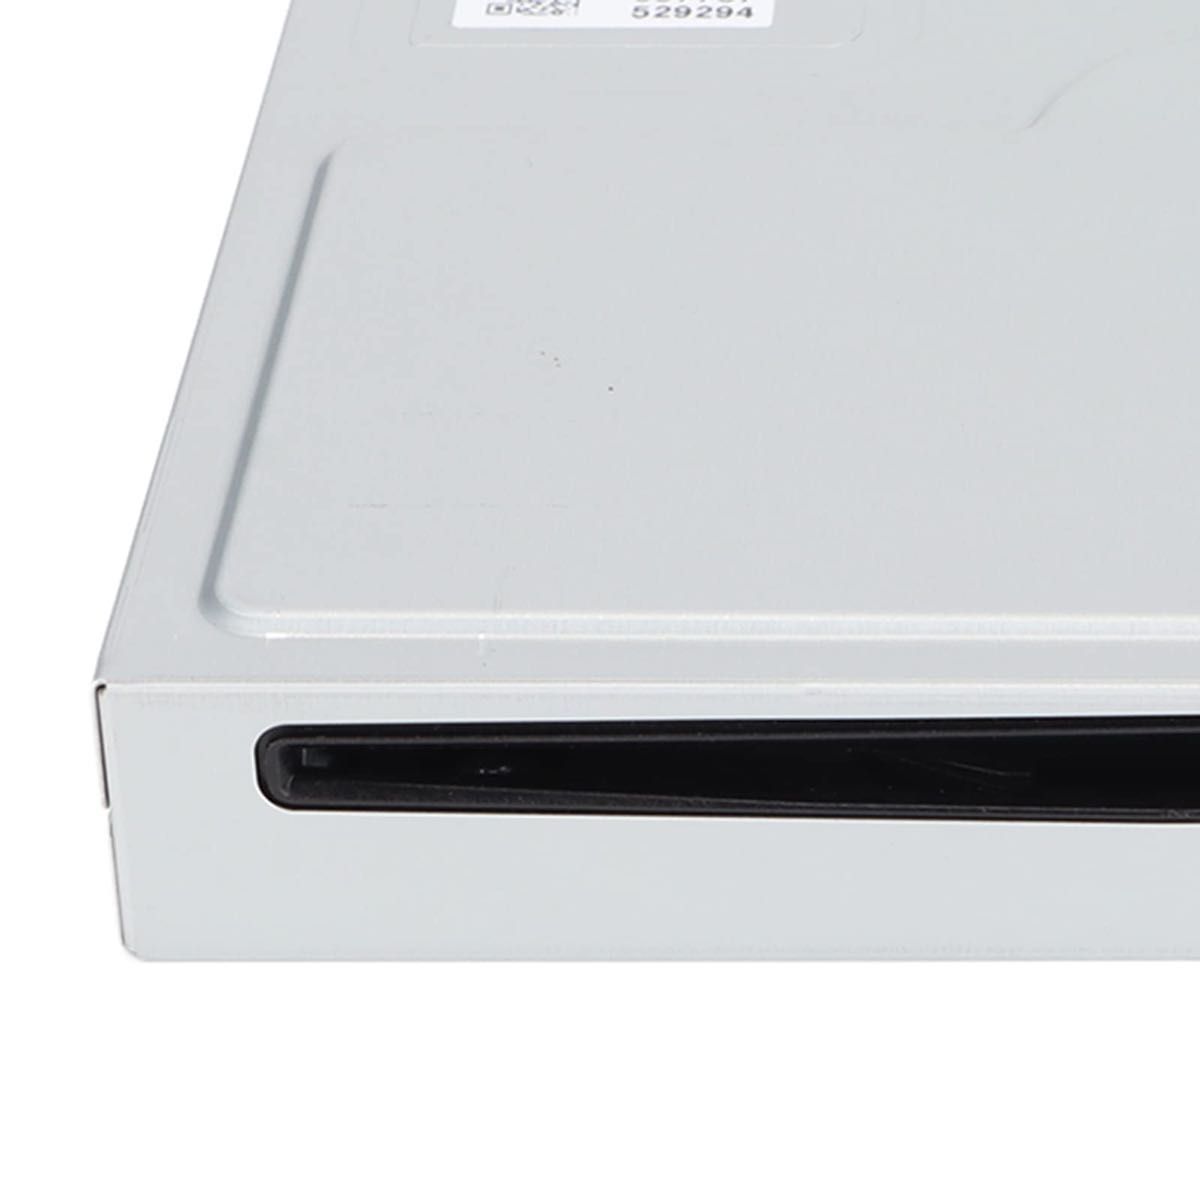 ゲームコンソールオプティカルドライブ、5.7 x 5.5 x 0.1in 内蔵オプティカルドライブ、WiiU用の内部交換